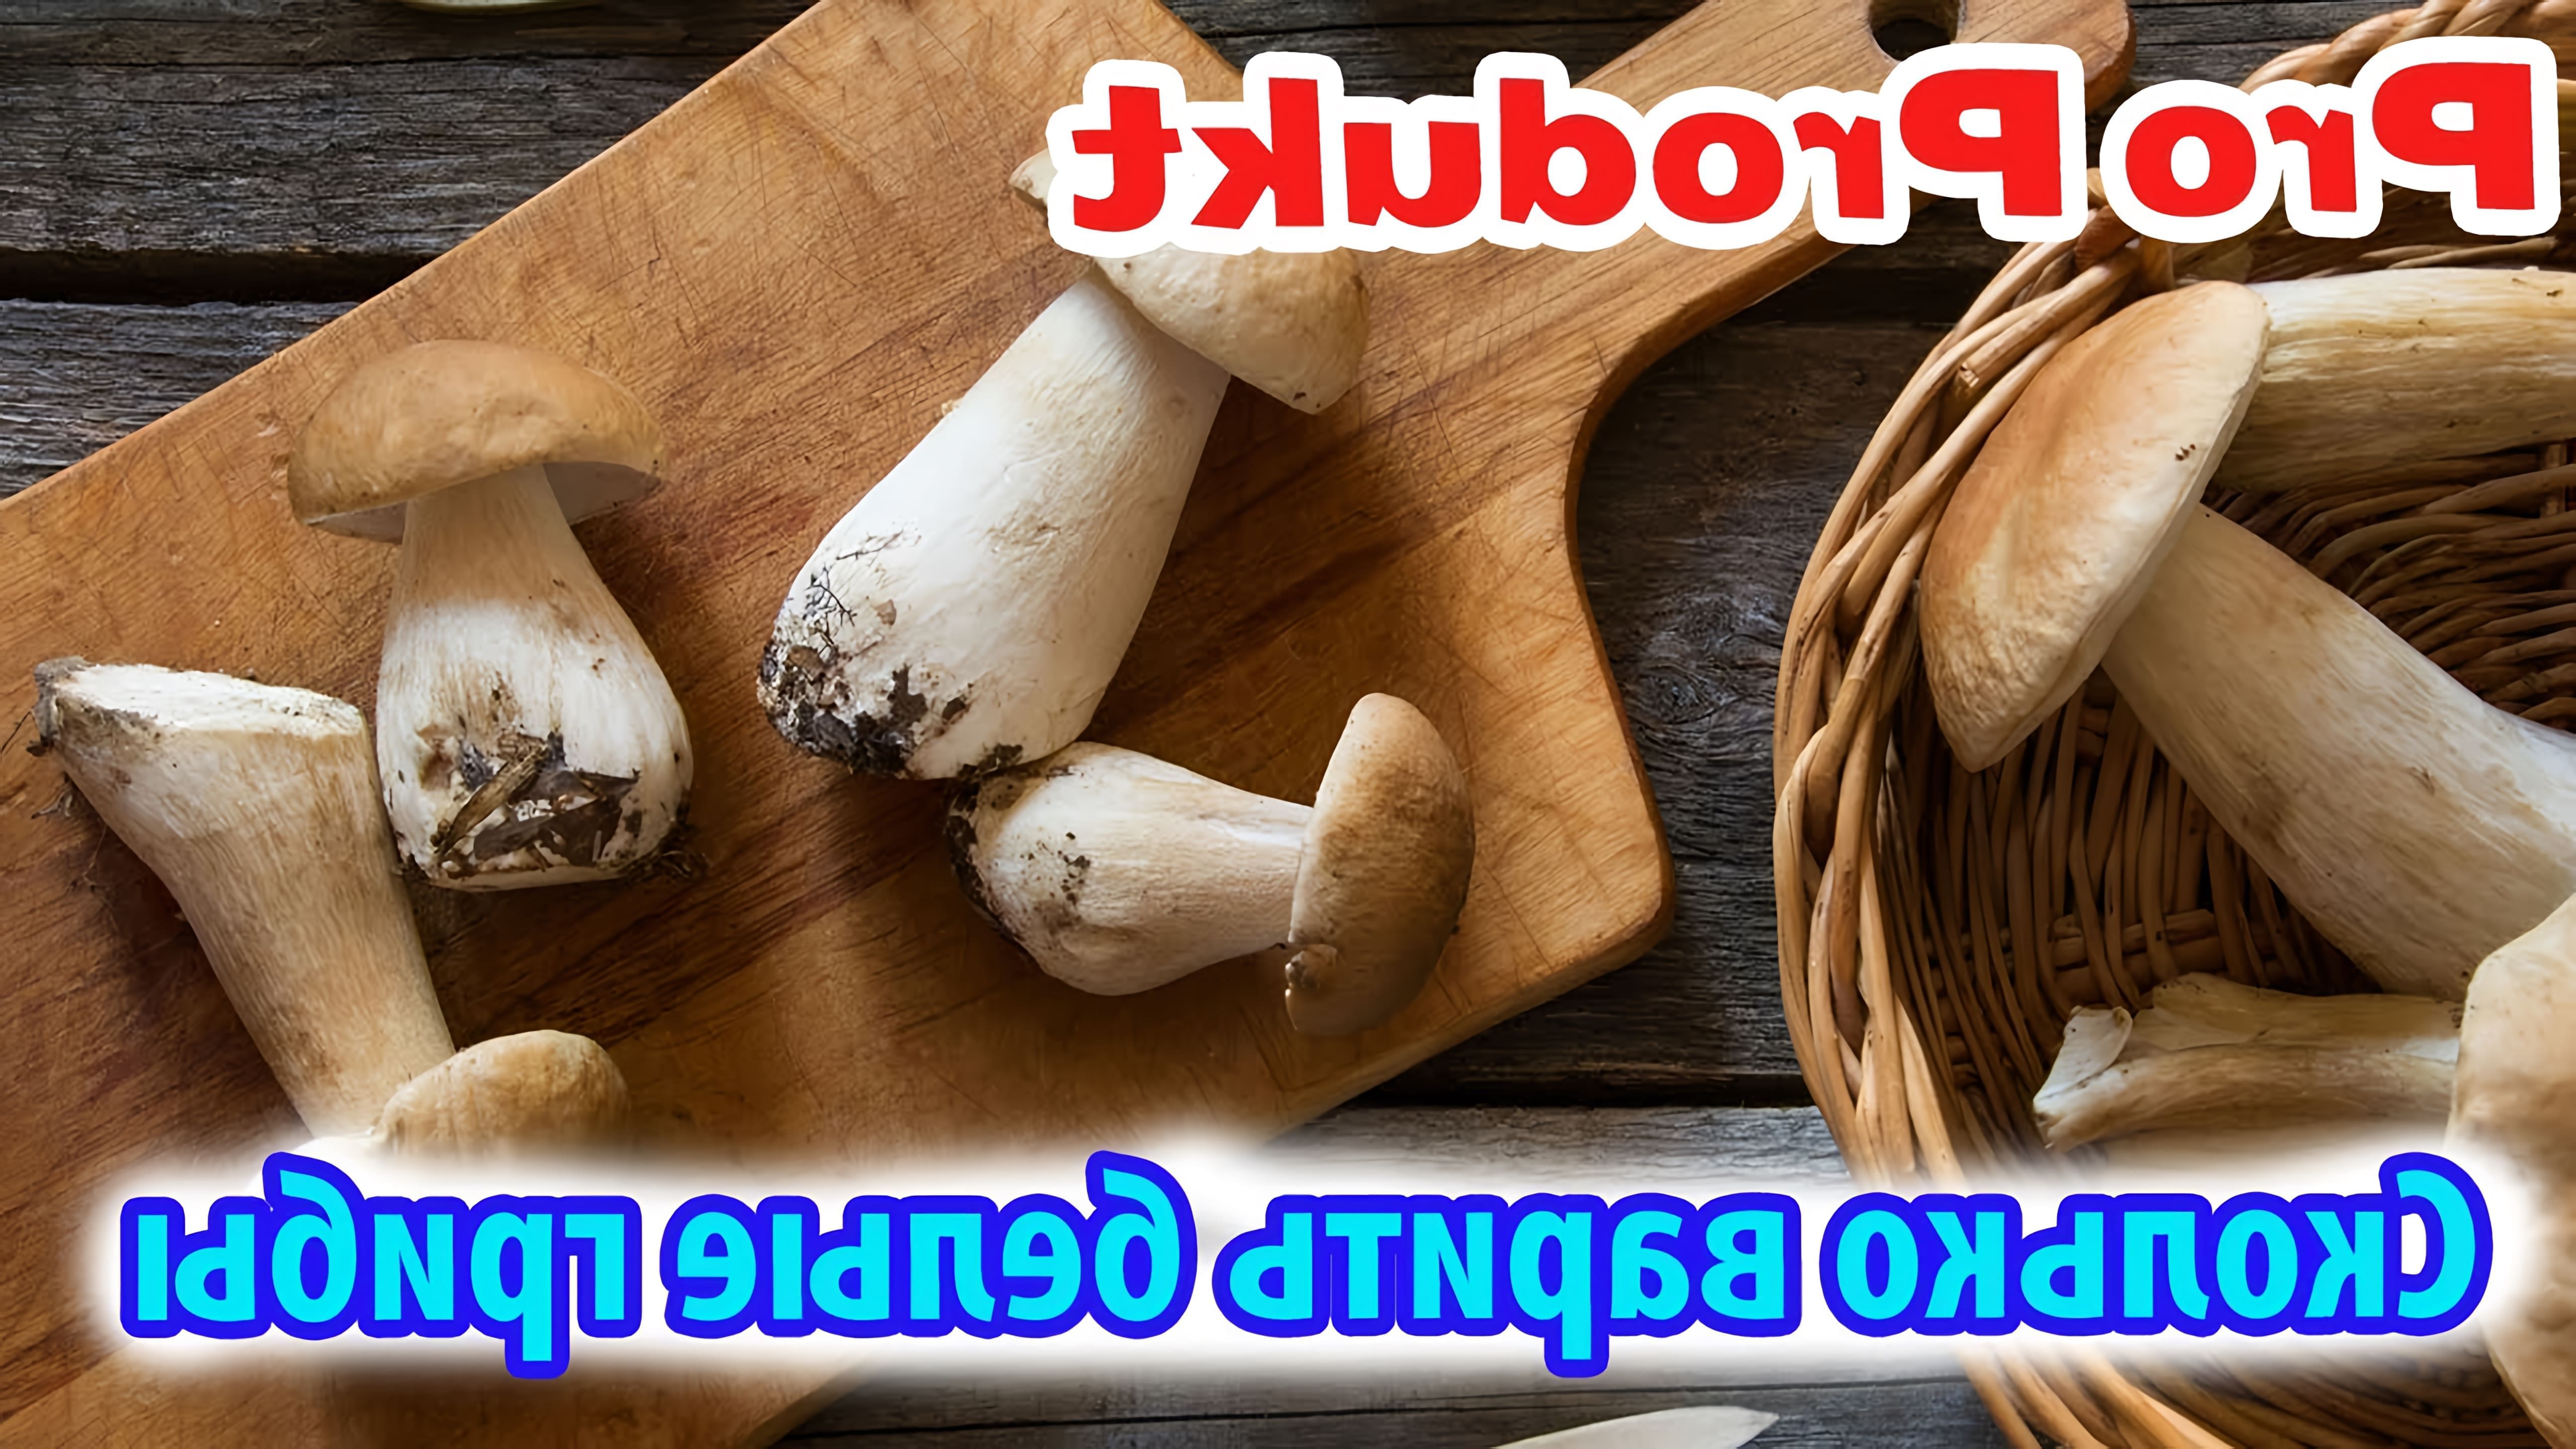 Белые грибы - это питательные и вкусные грибы, которые часто используются в кулинарии